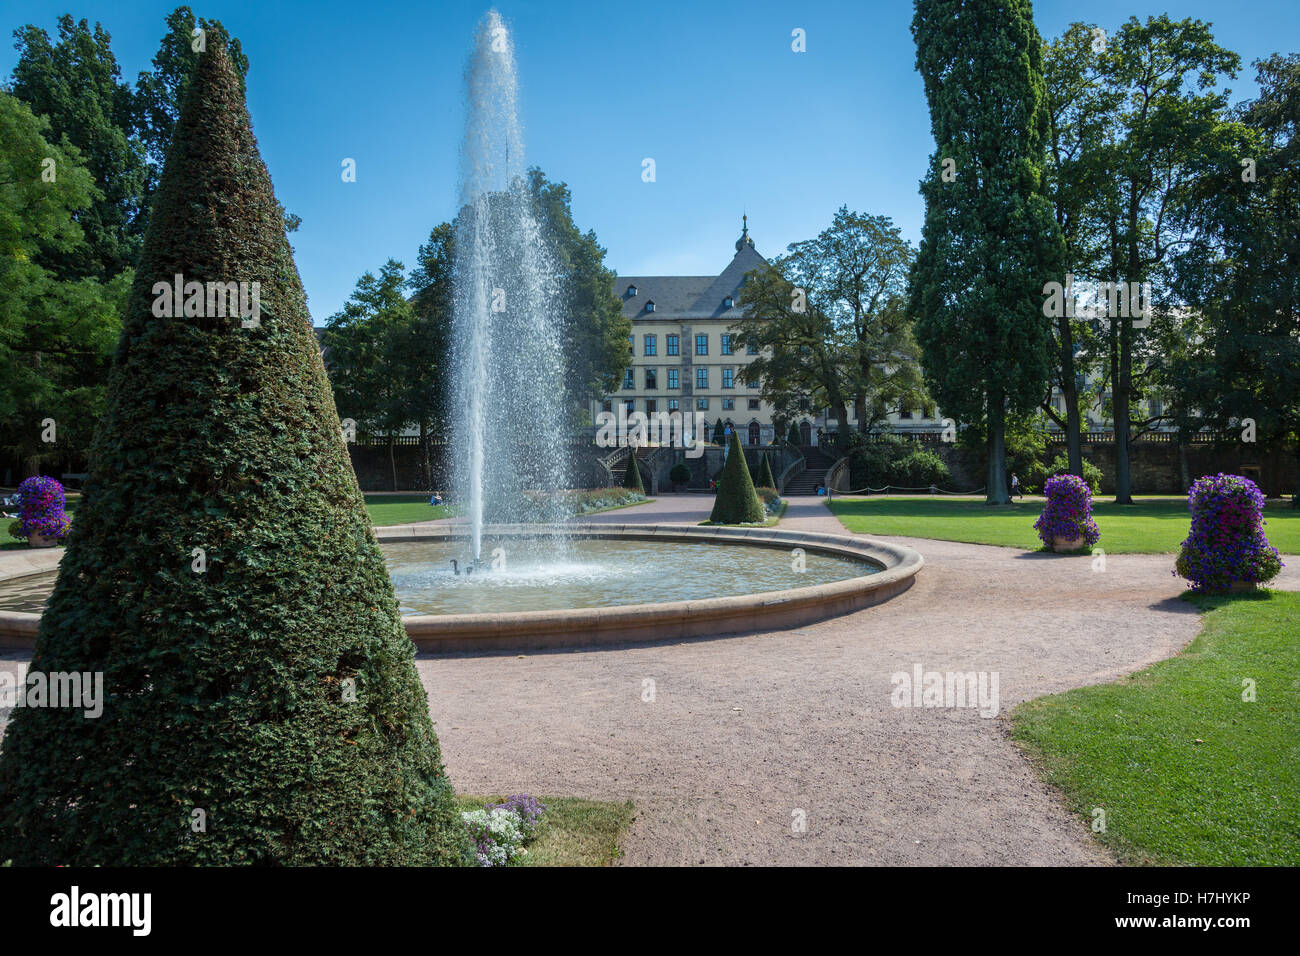 Fountain in the Schloßgarten, Fulda, Germany, Europe. Stock Photo